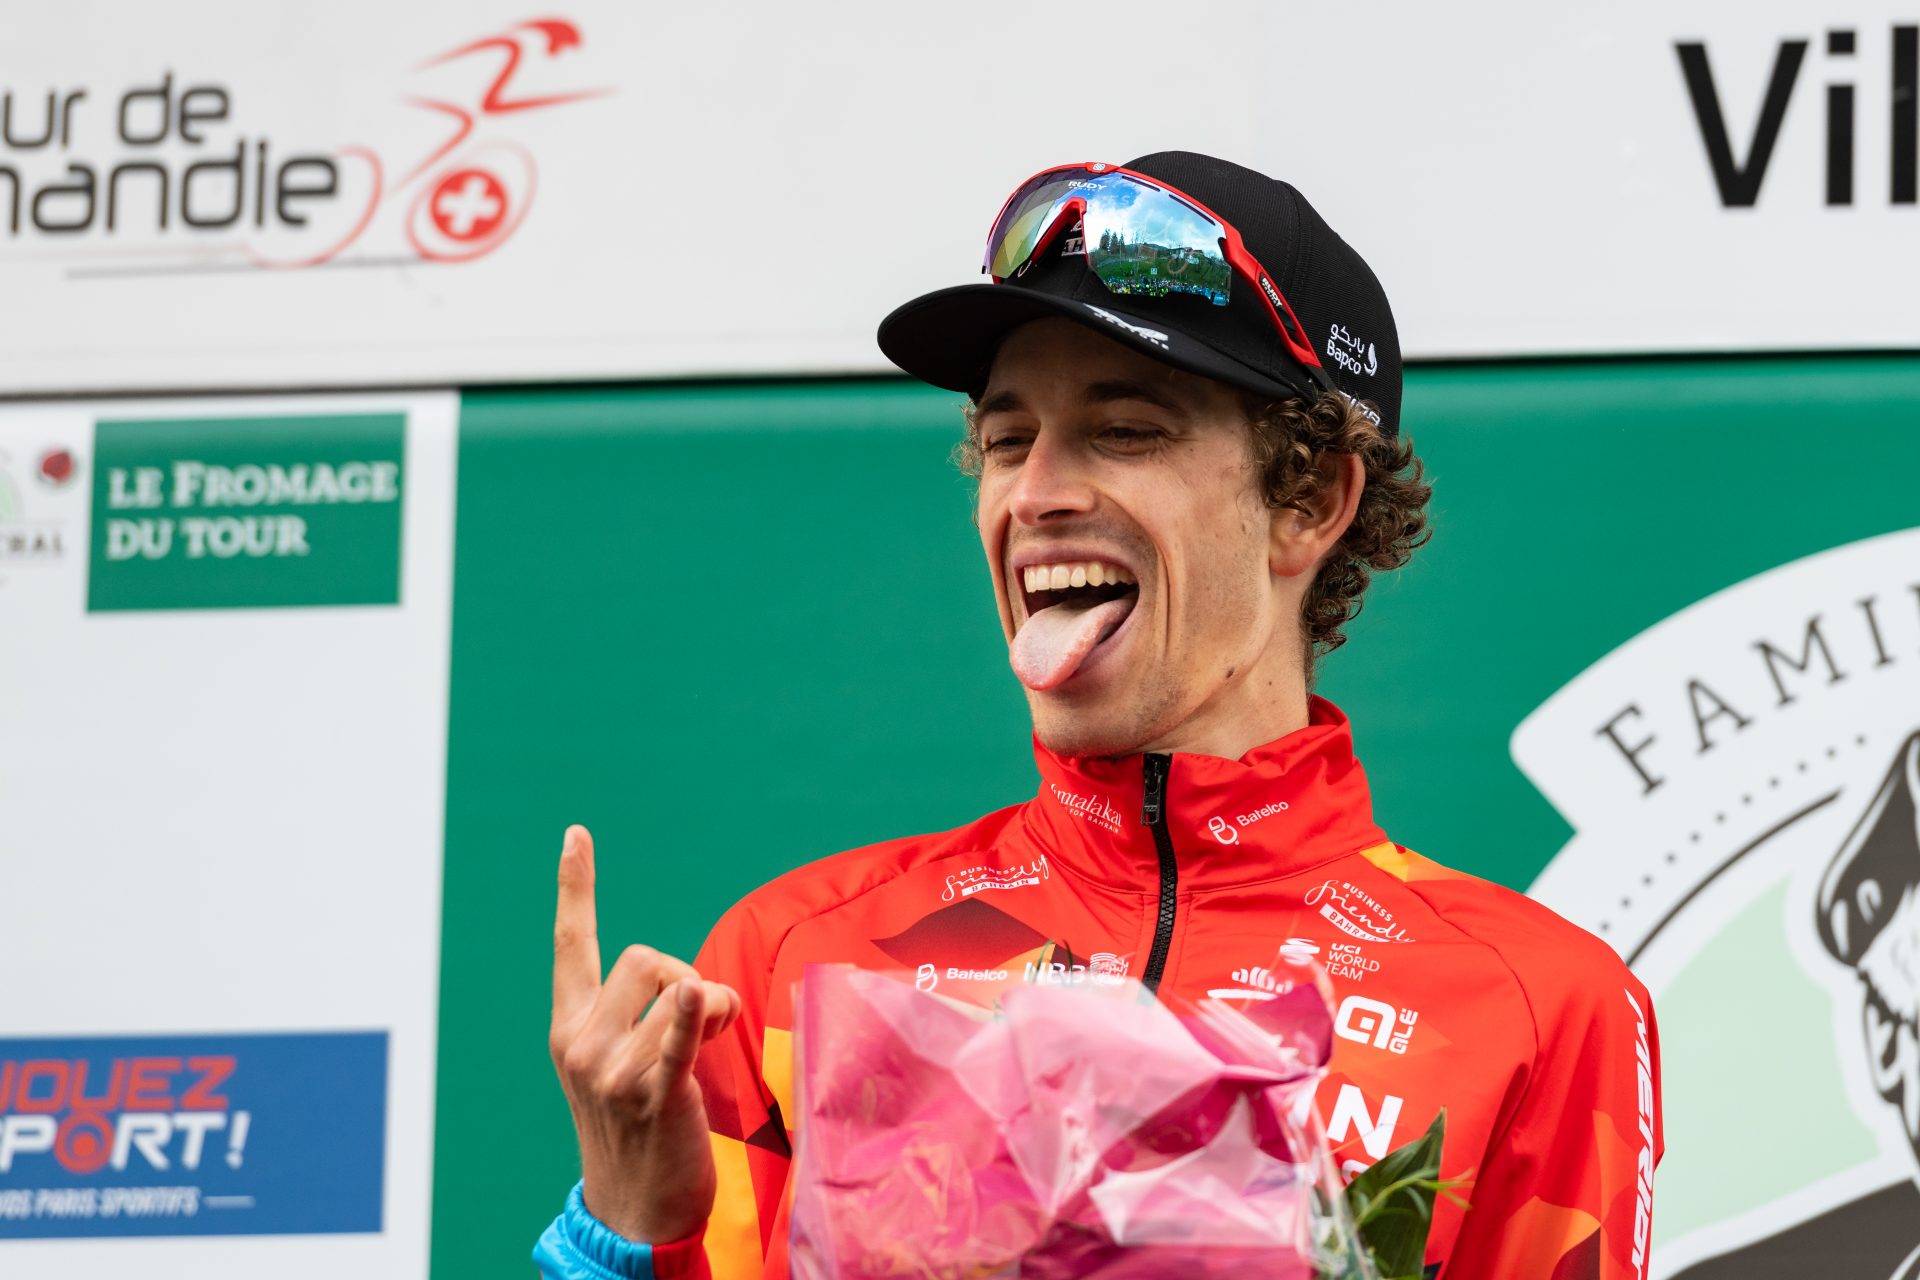 The tragic story of Gino Mäder, cycling's next big star